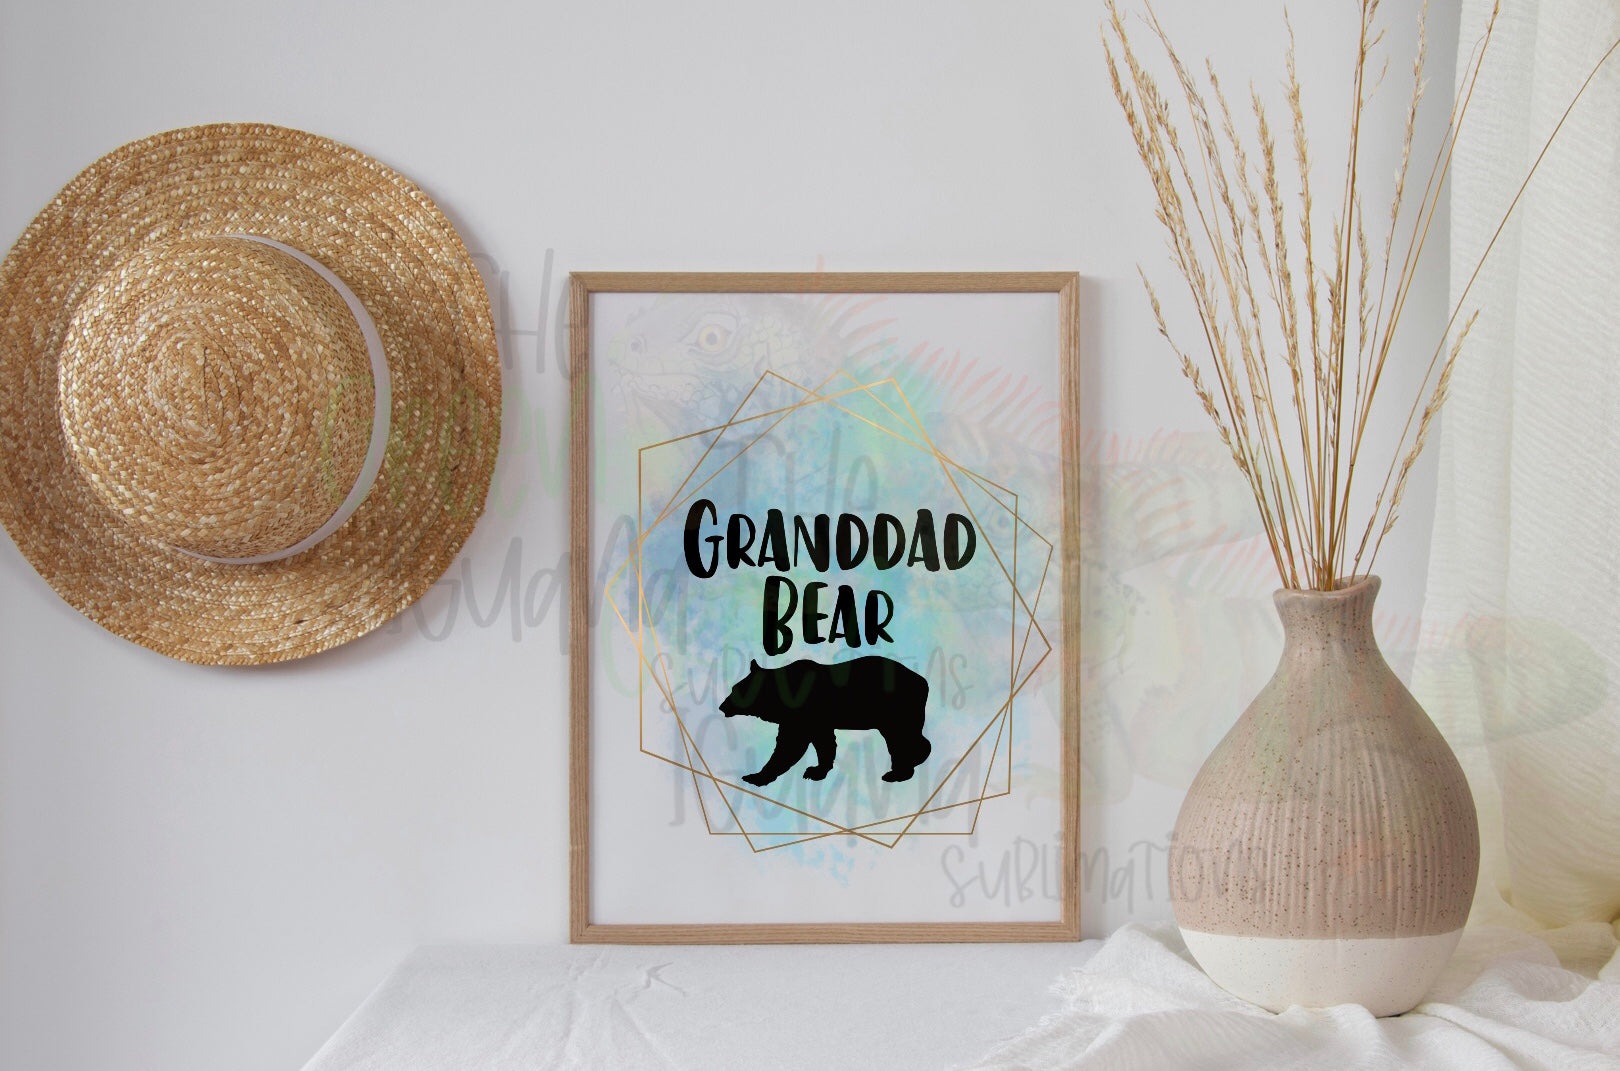 Granddad Bear